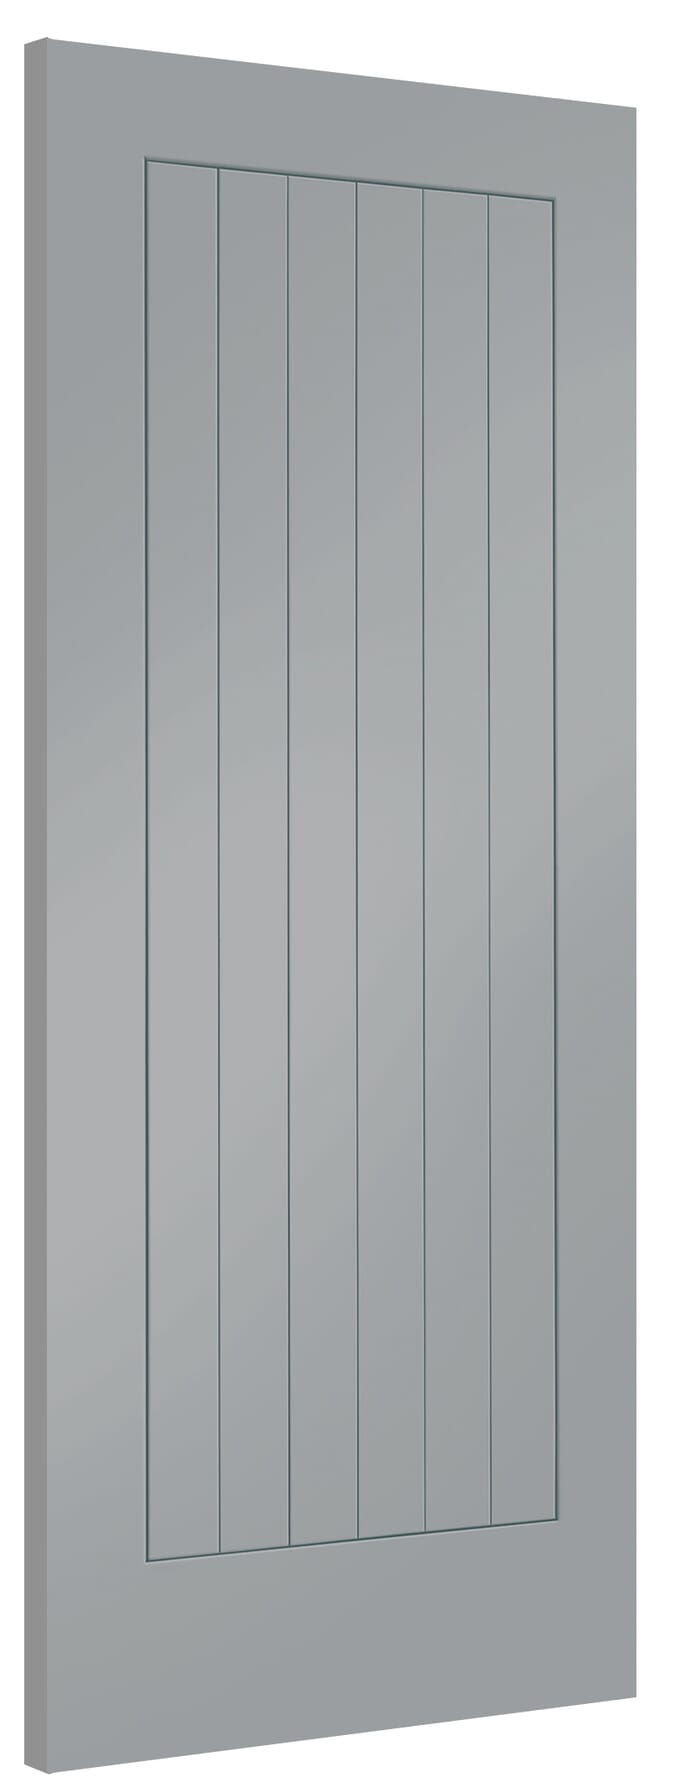 686x1981x35mm (27") Suffolk Storm Grey Internal Doors